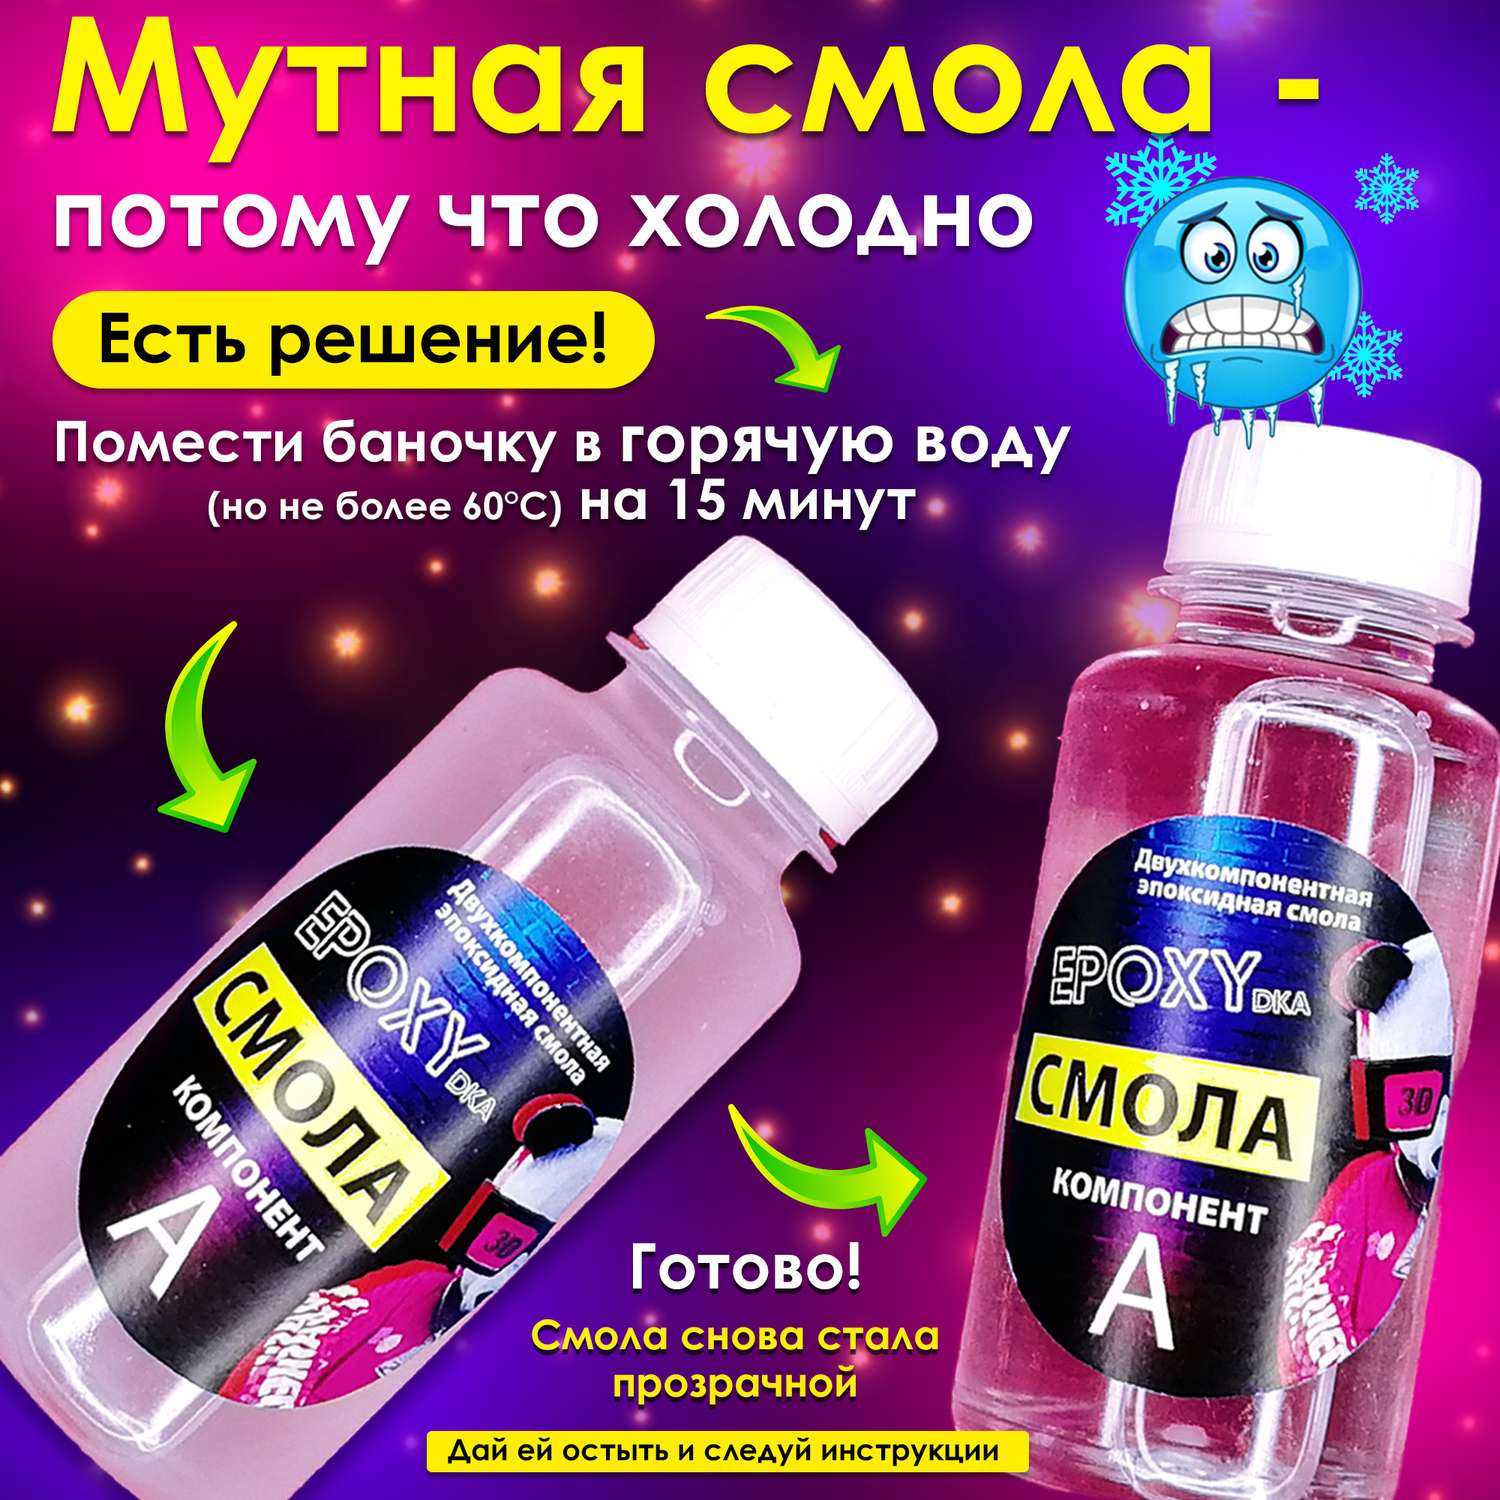 Набор для творчества MINI-TOYS Эпоксидная смола/EPOXYdka Normal BOX 3D/Молд силиконовый/Медведь - фото 3